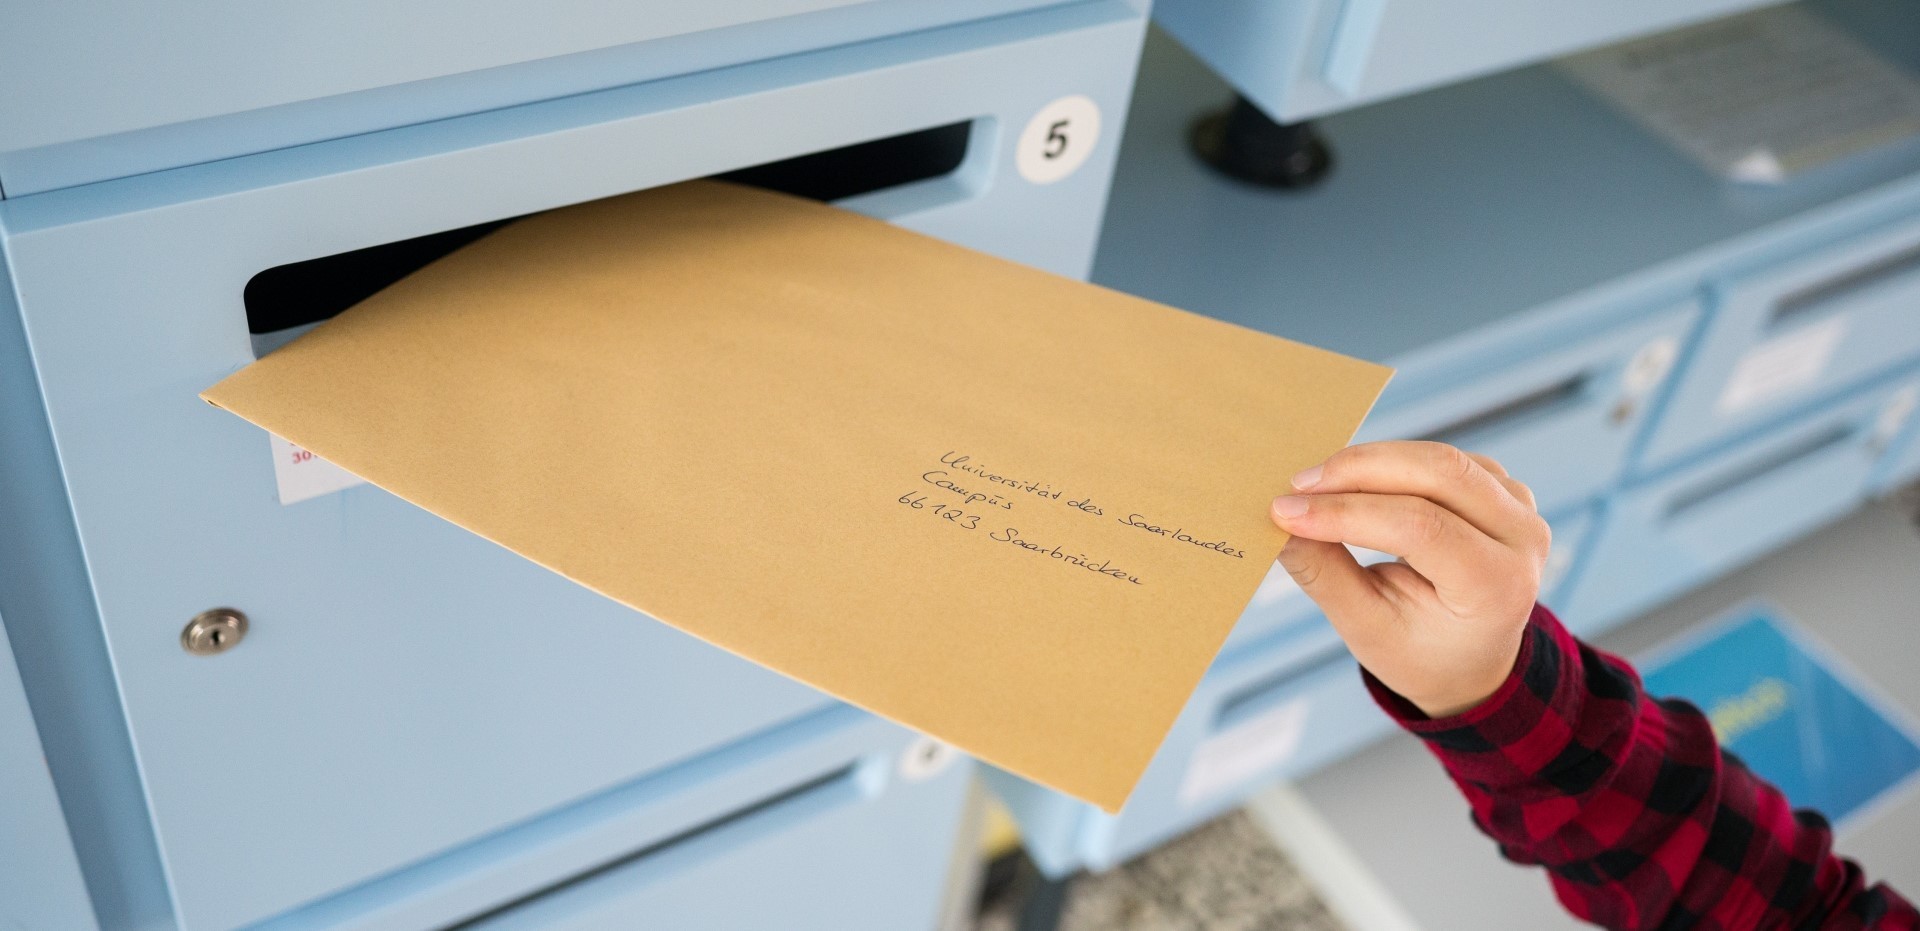 Ein an die Universität des Saarlandes adressierter Brief wird in einen Breifkasten geworfen